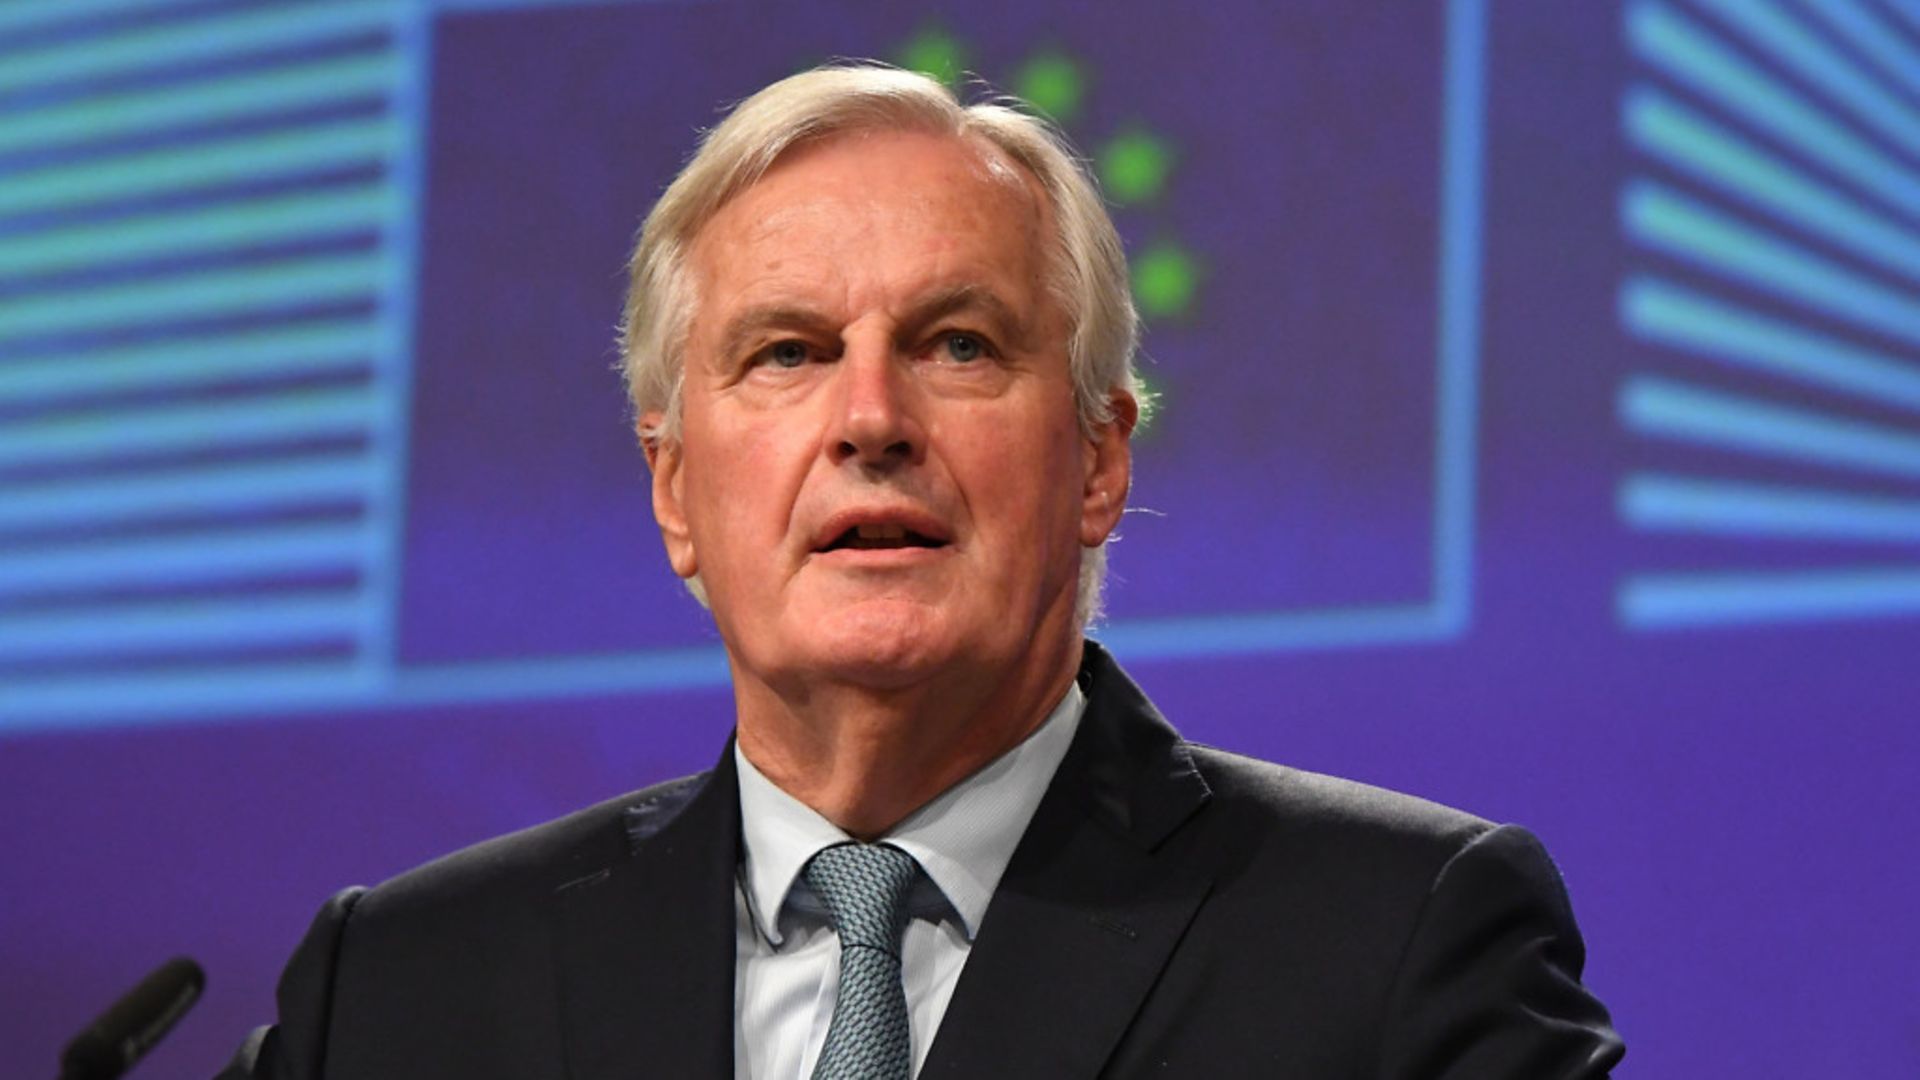 Michel Barnier, the EU's Chief Brexit Negotiator. Photo: PA